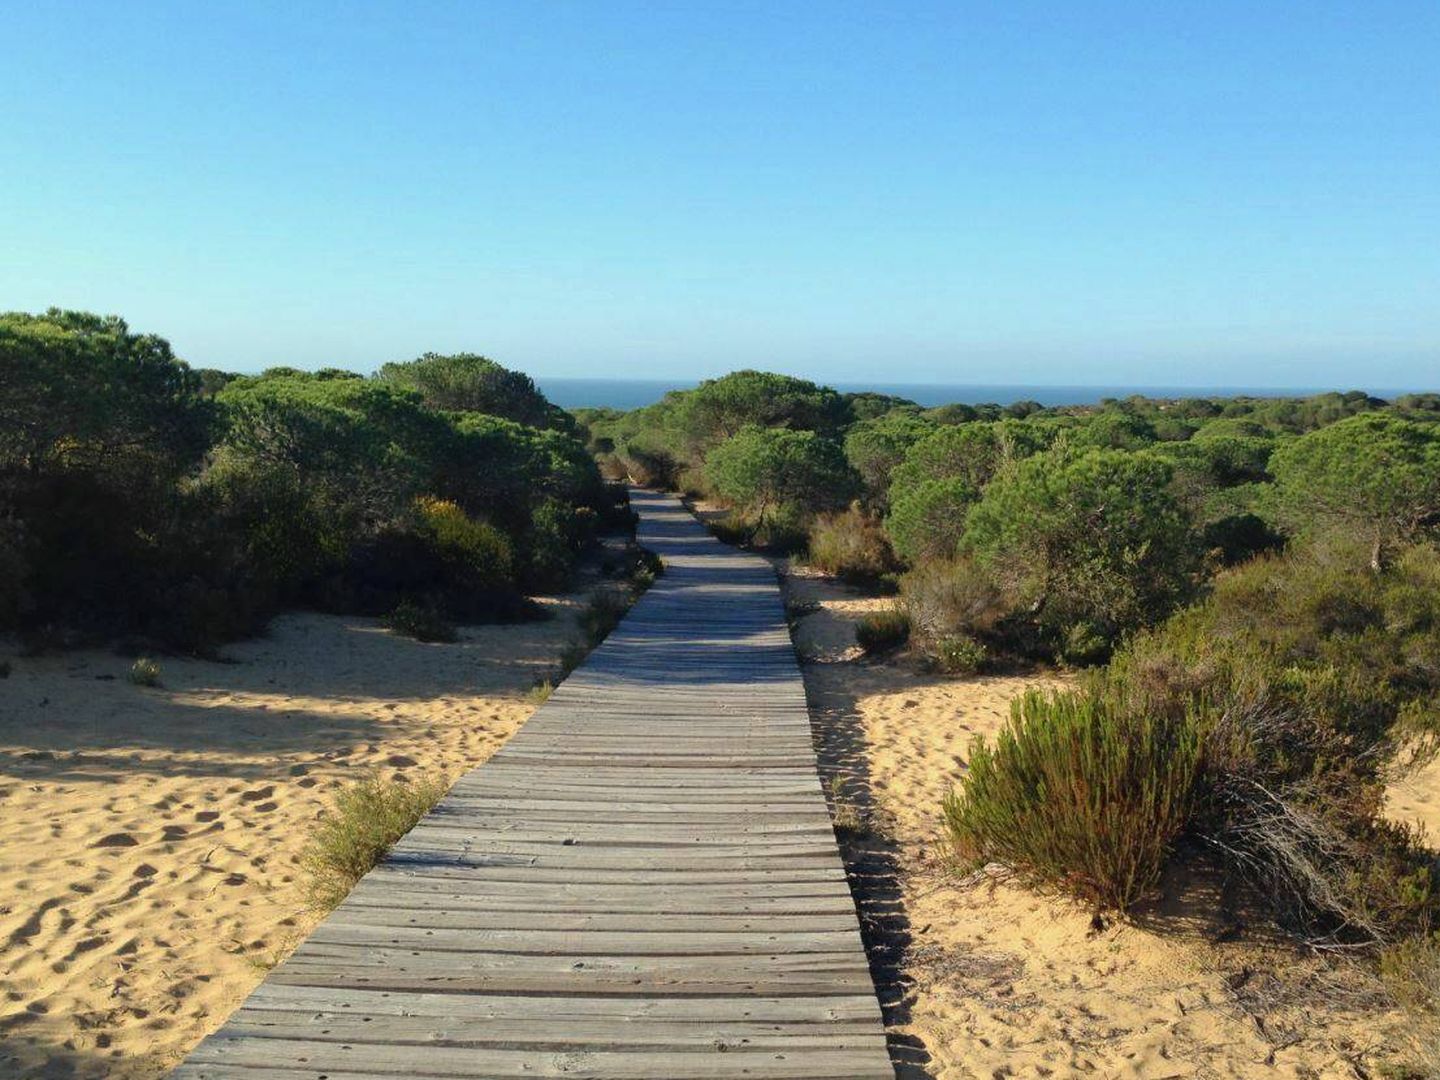 El Parque Nacional de Doñana se encamina a un incierto futuro. (Jose Luis Gallego)